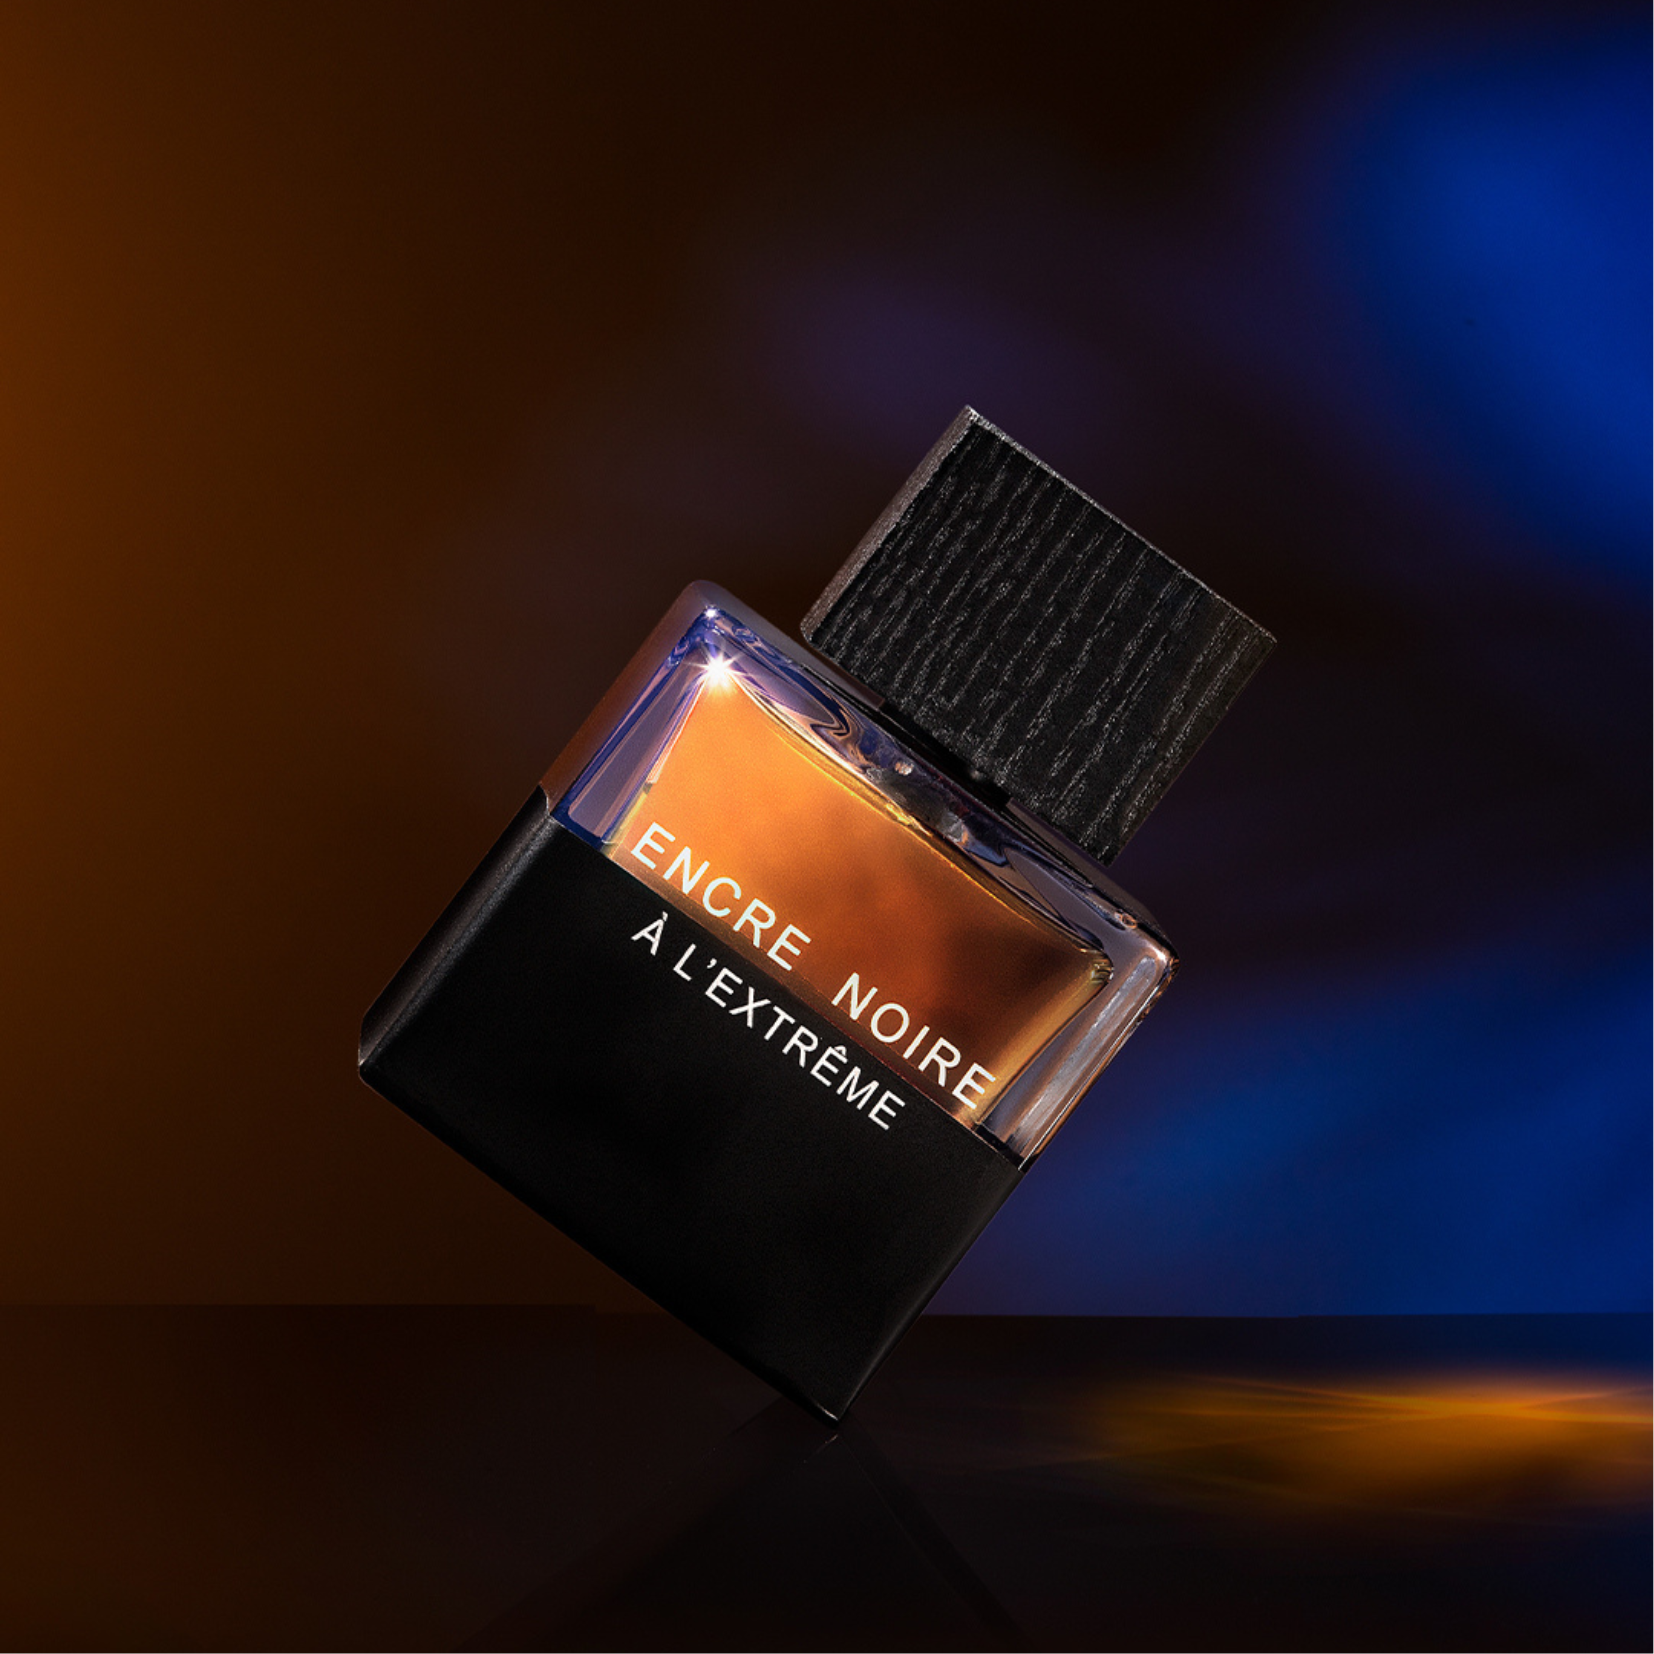 Lalique Encre Noire Al Extreme for Men – Perfume Network India